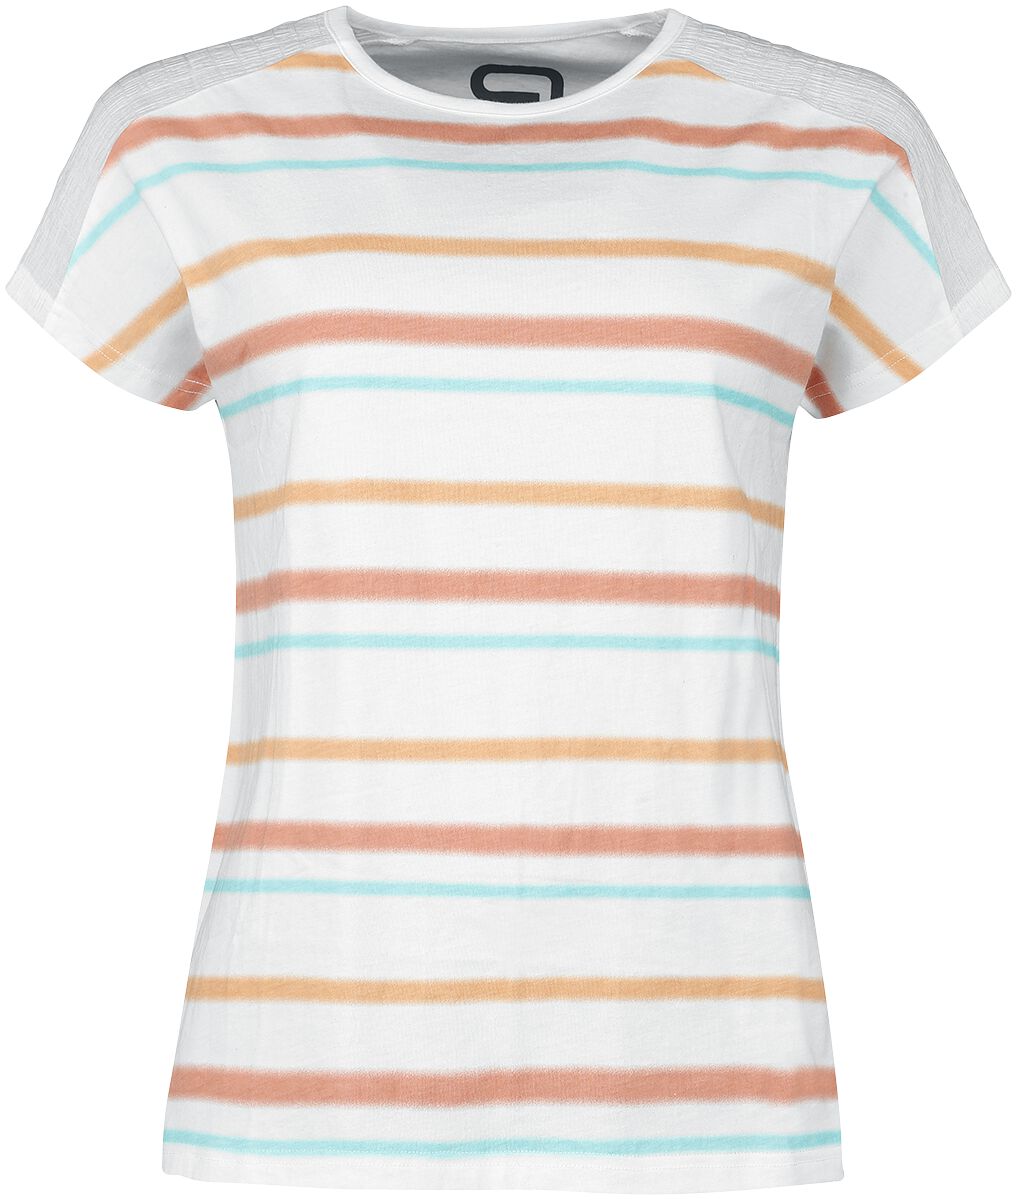 T-Shirt Manches courtes de RED by EMP - T-Shirt with Stripes - S à 5XL - pour Femme - blanc